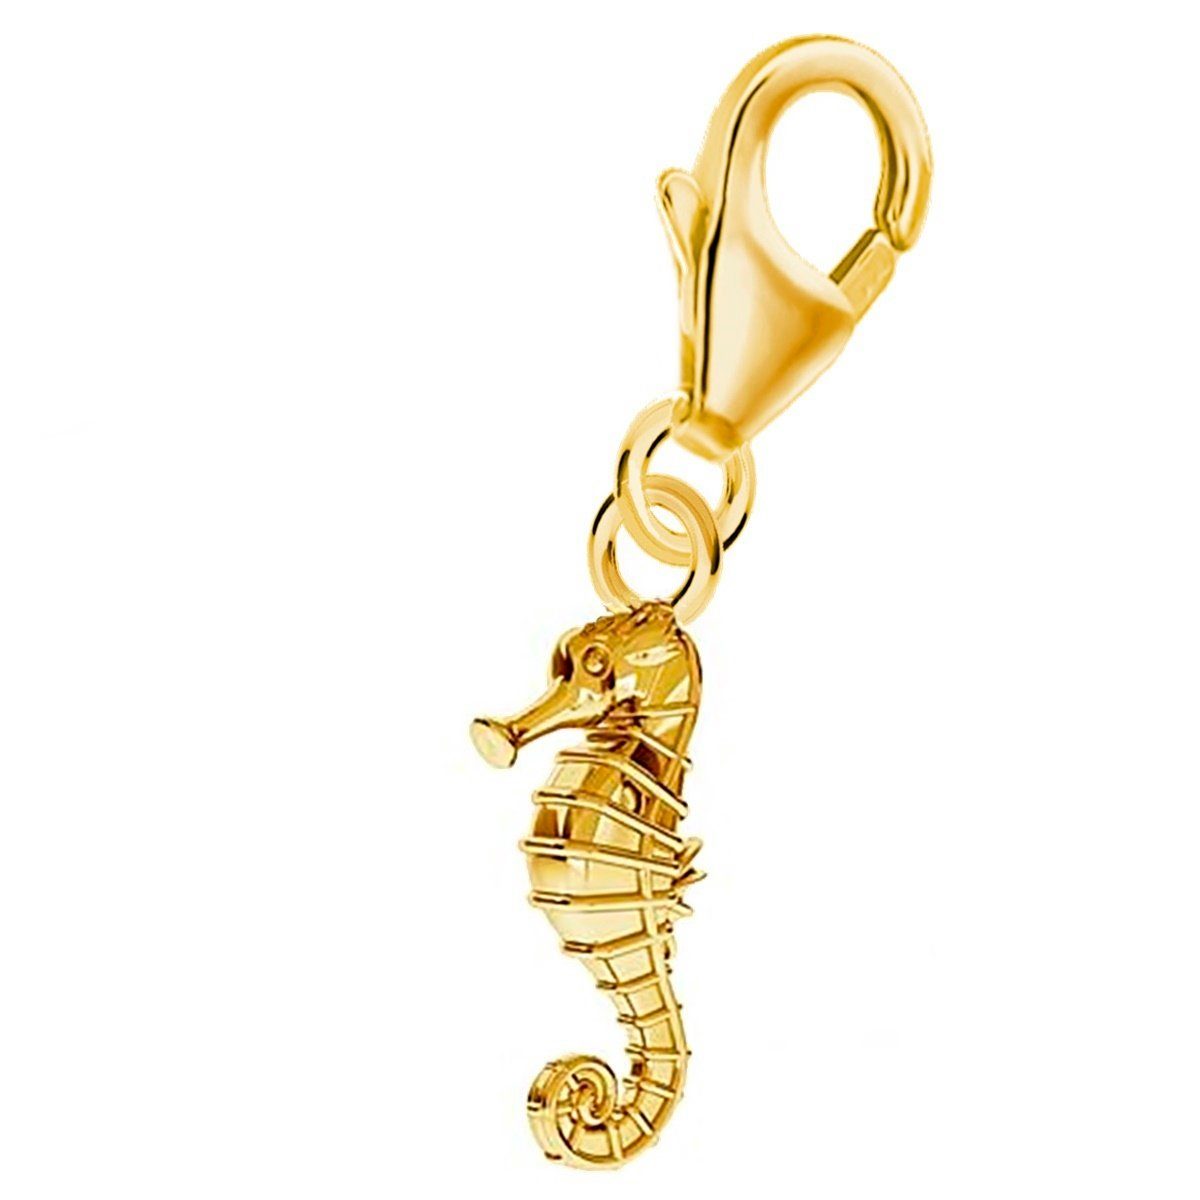 Goldene Hufeisen Charm-Einhänger Seepferd Karabiner Charm Anhänger für Bettelarmband 925 Silber (inkl. Etui), für Gliederarmband oder Halskette